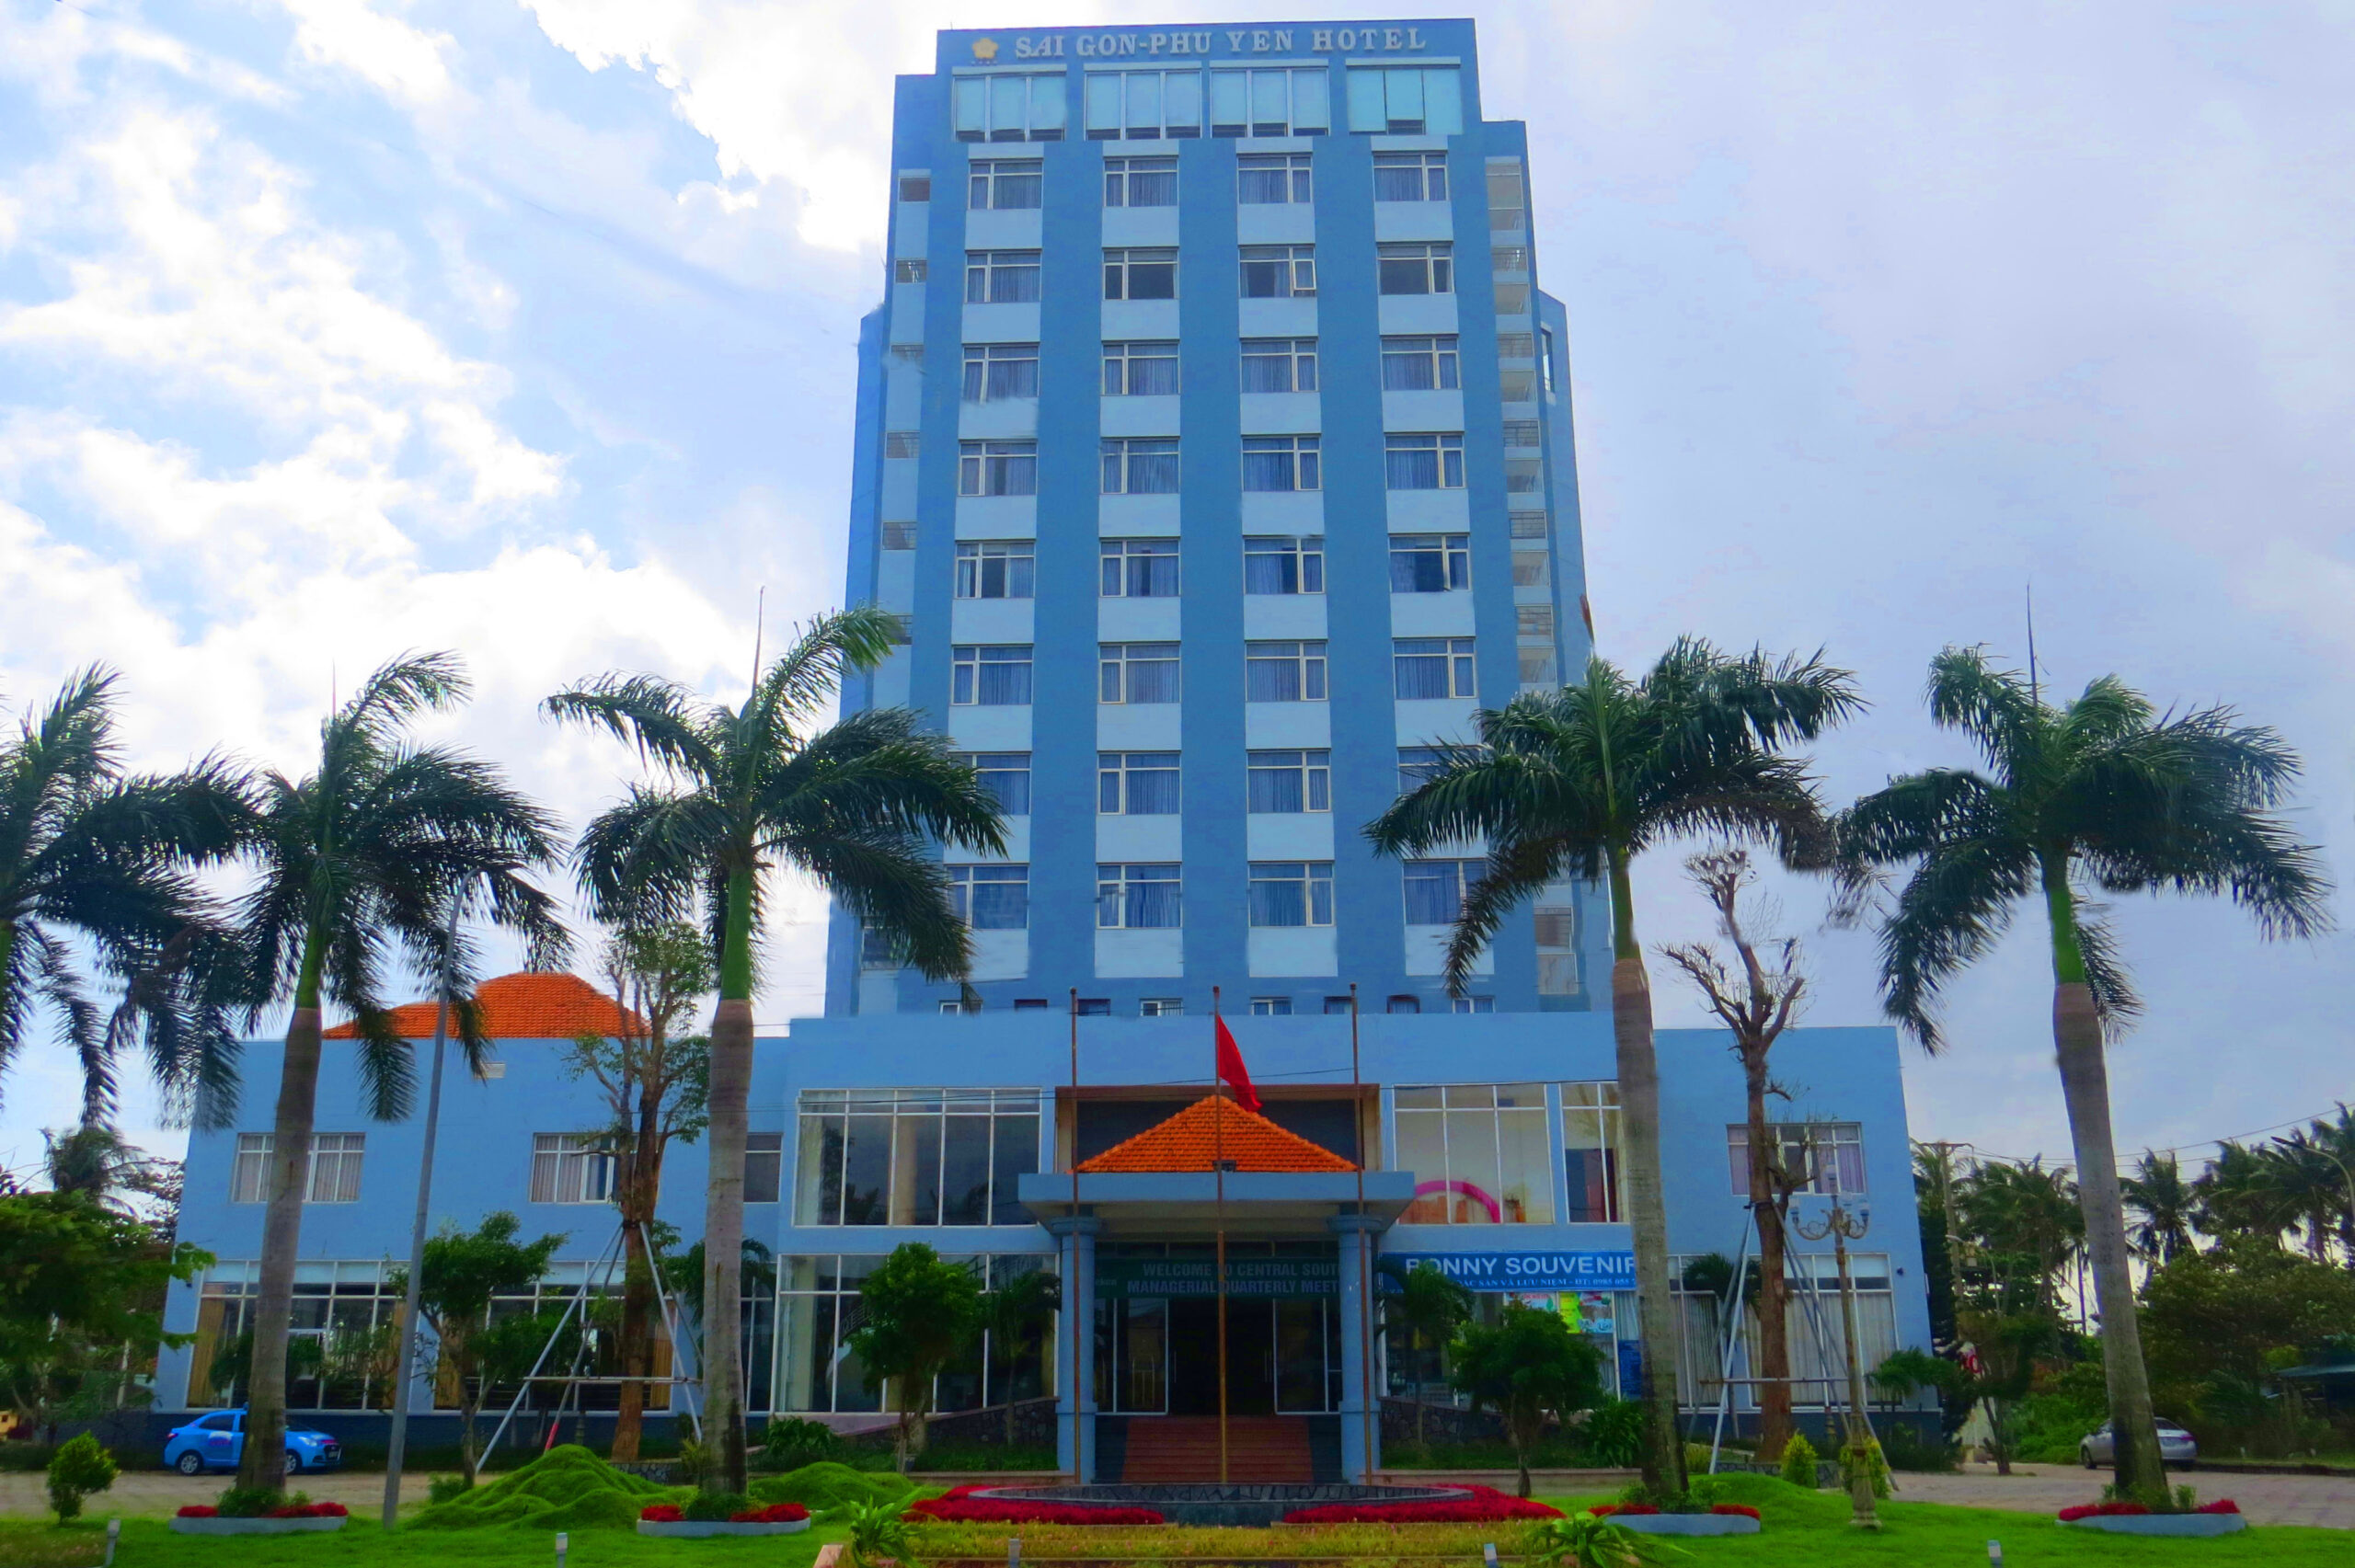  Khách sạn Sài Gòn Phú Yên: nét đẹp bình yên của xứ hoa vàng cỏ xanh